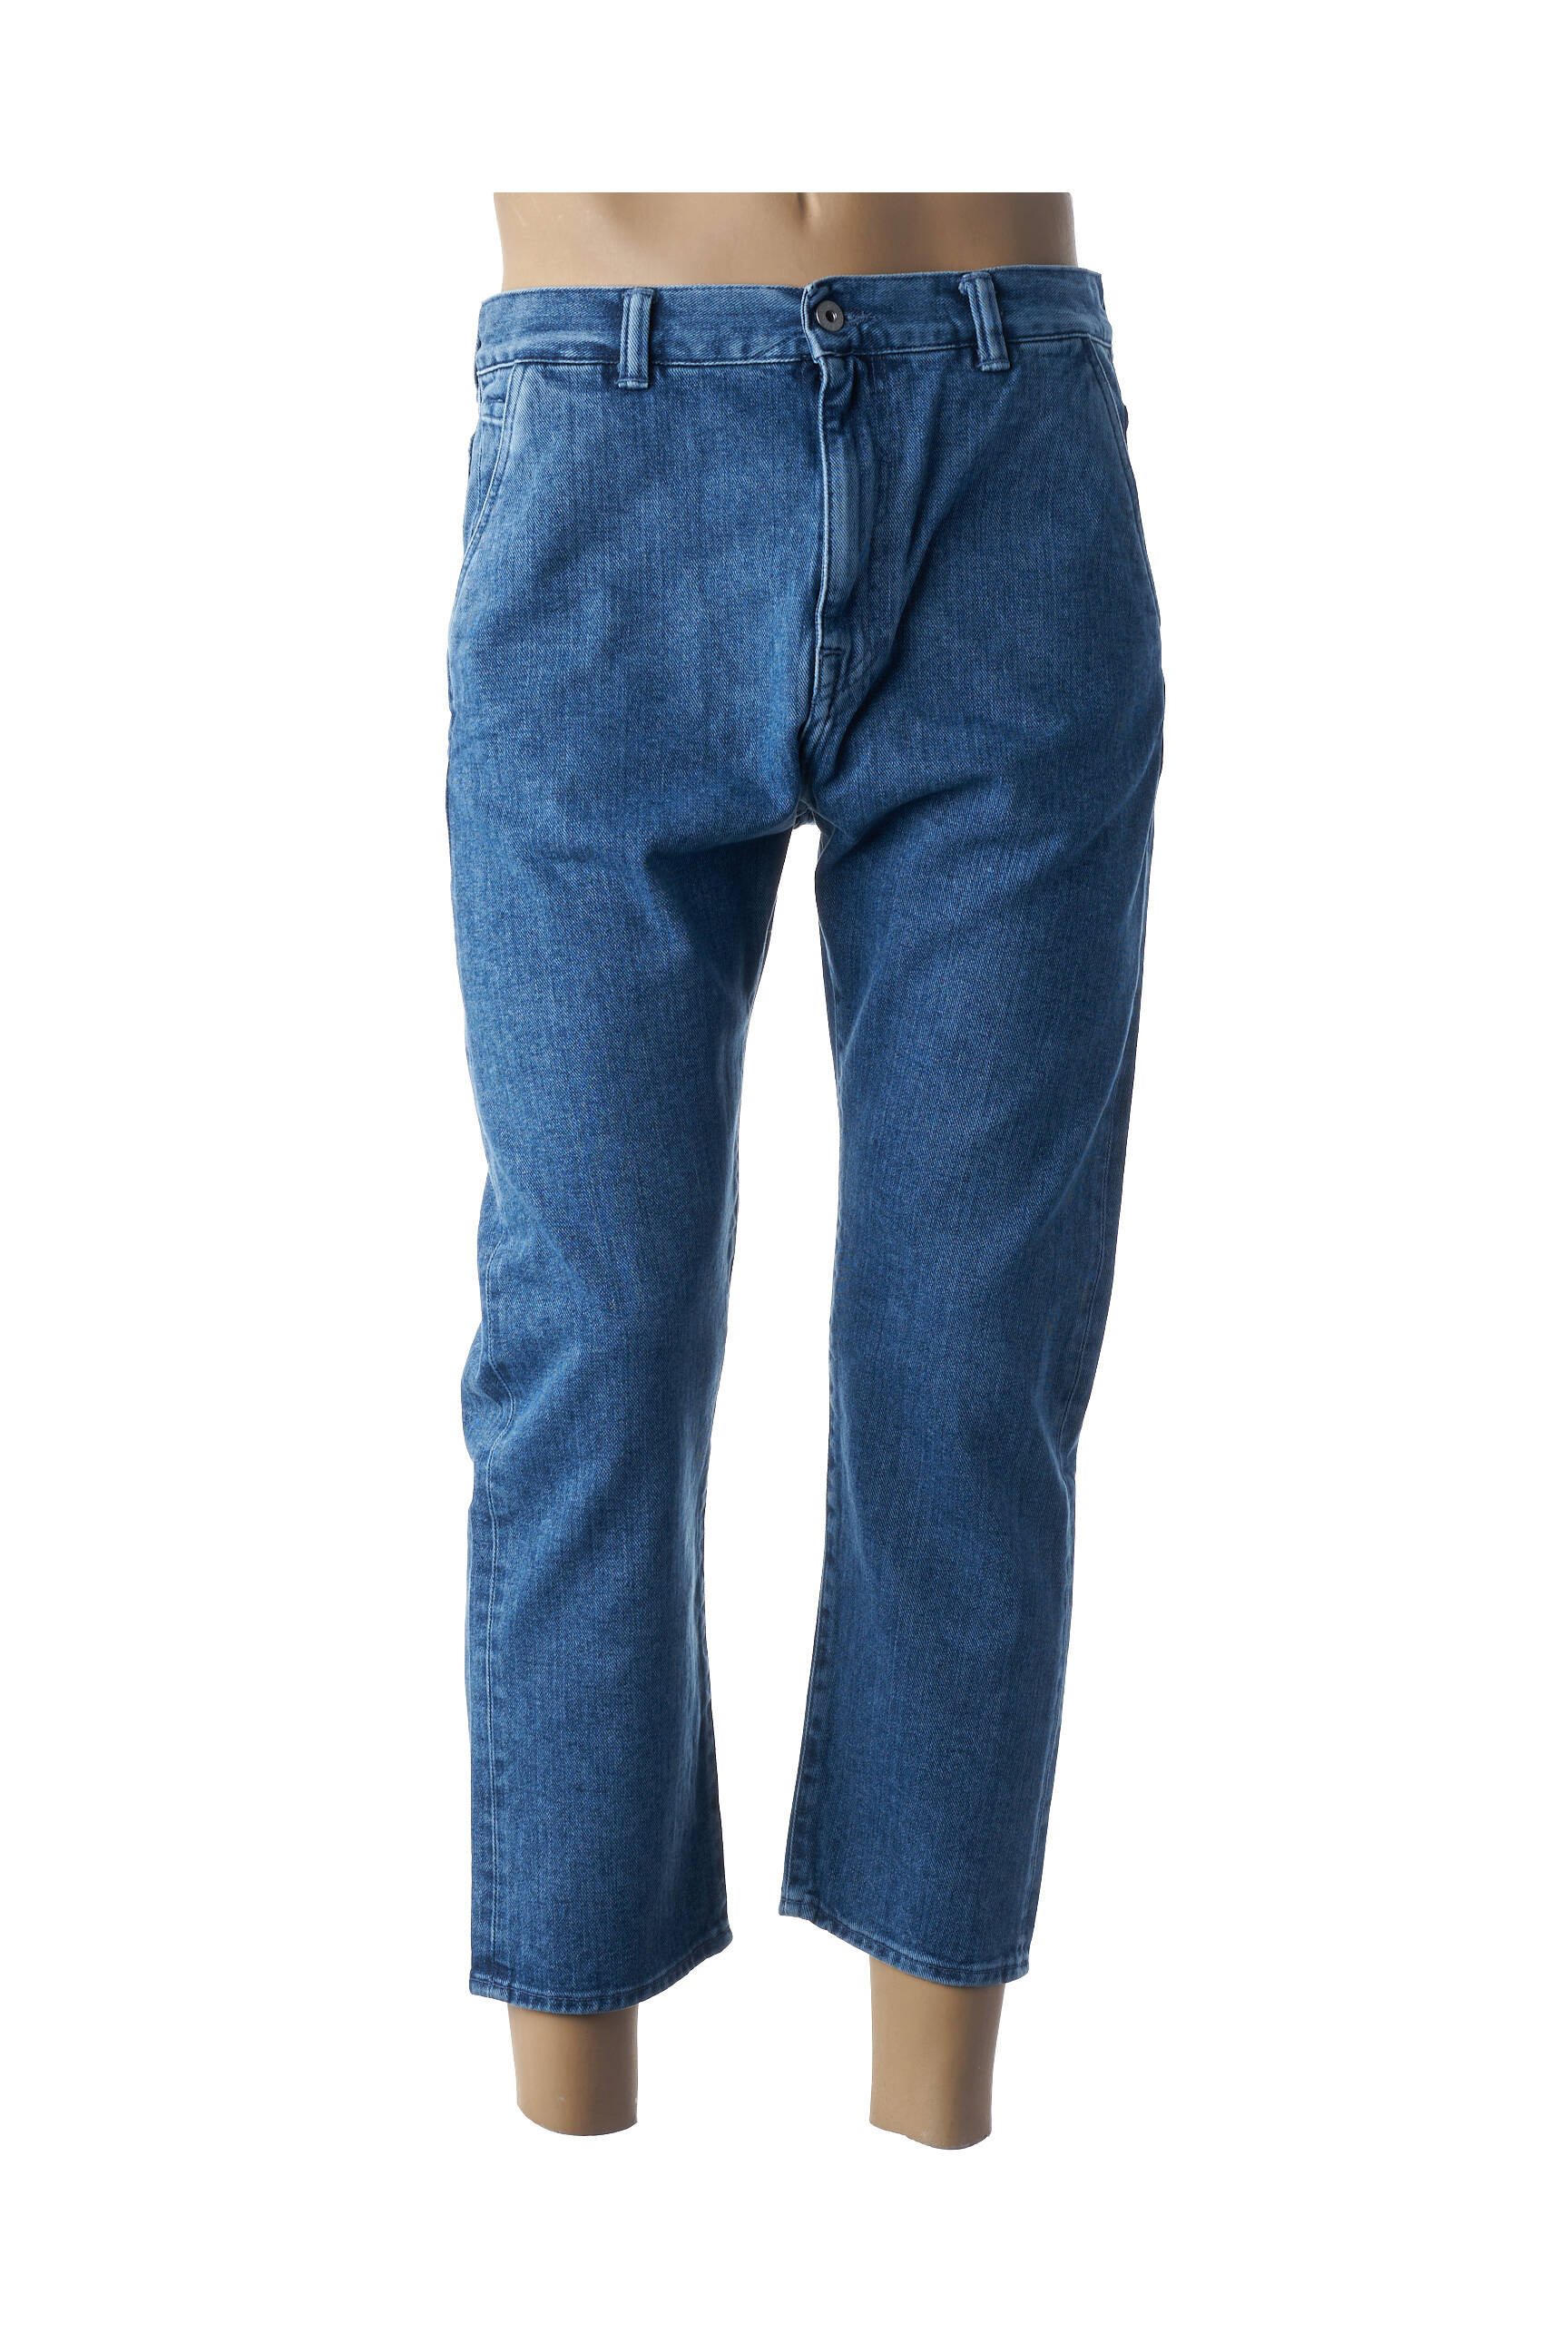 Jeans slim EDWIN W28 Jeans slim Edwin Homme Homme Vêtements Edwin Homme Jeans Edwin Homme Jeans slim Edwin Homme bleu T 38 